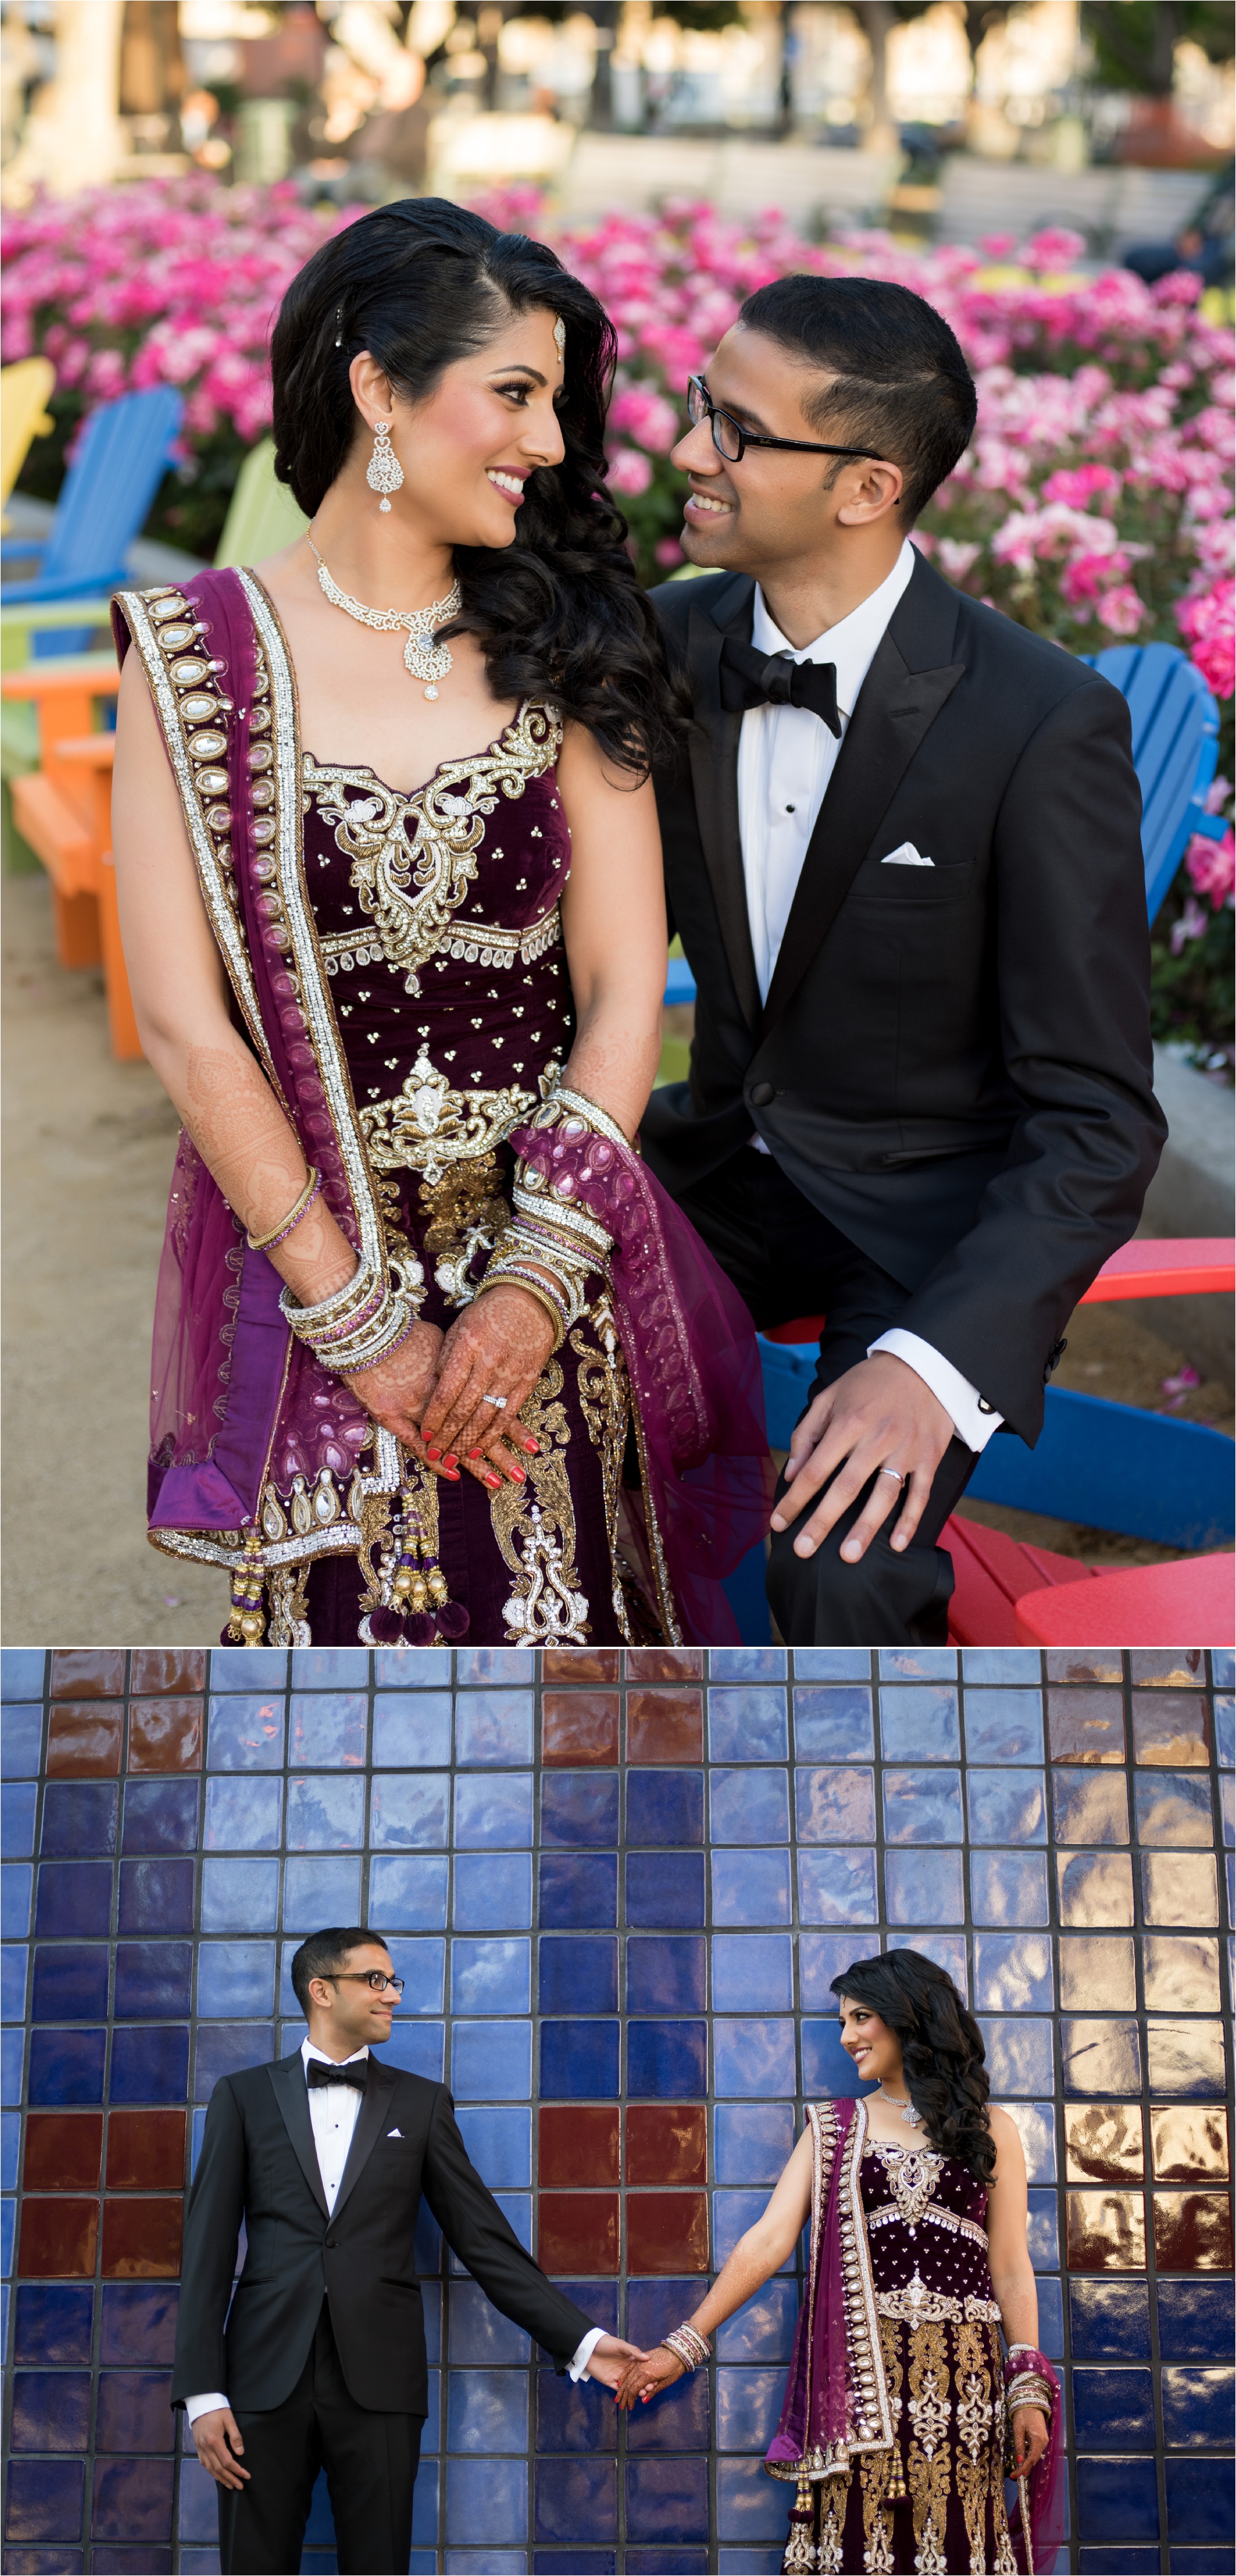 SanJose_Fairmont_Indian_Wedding_0069.jpg